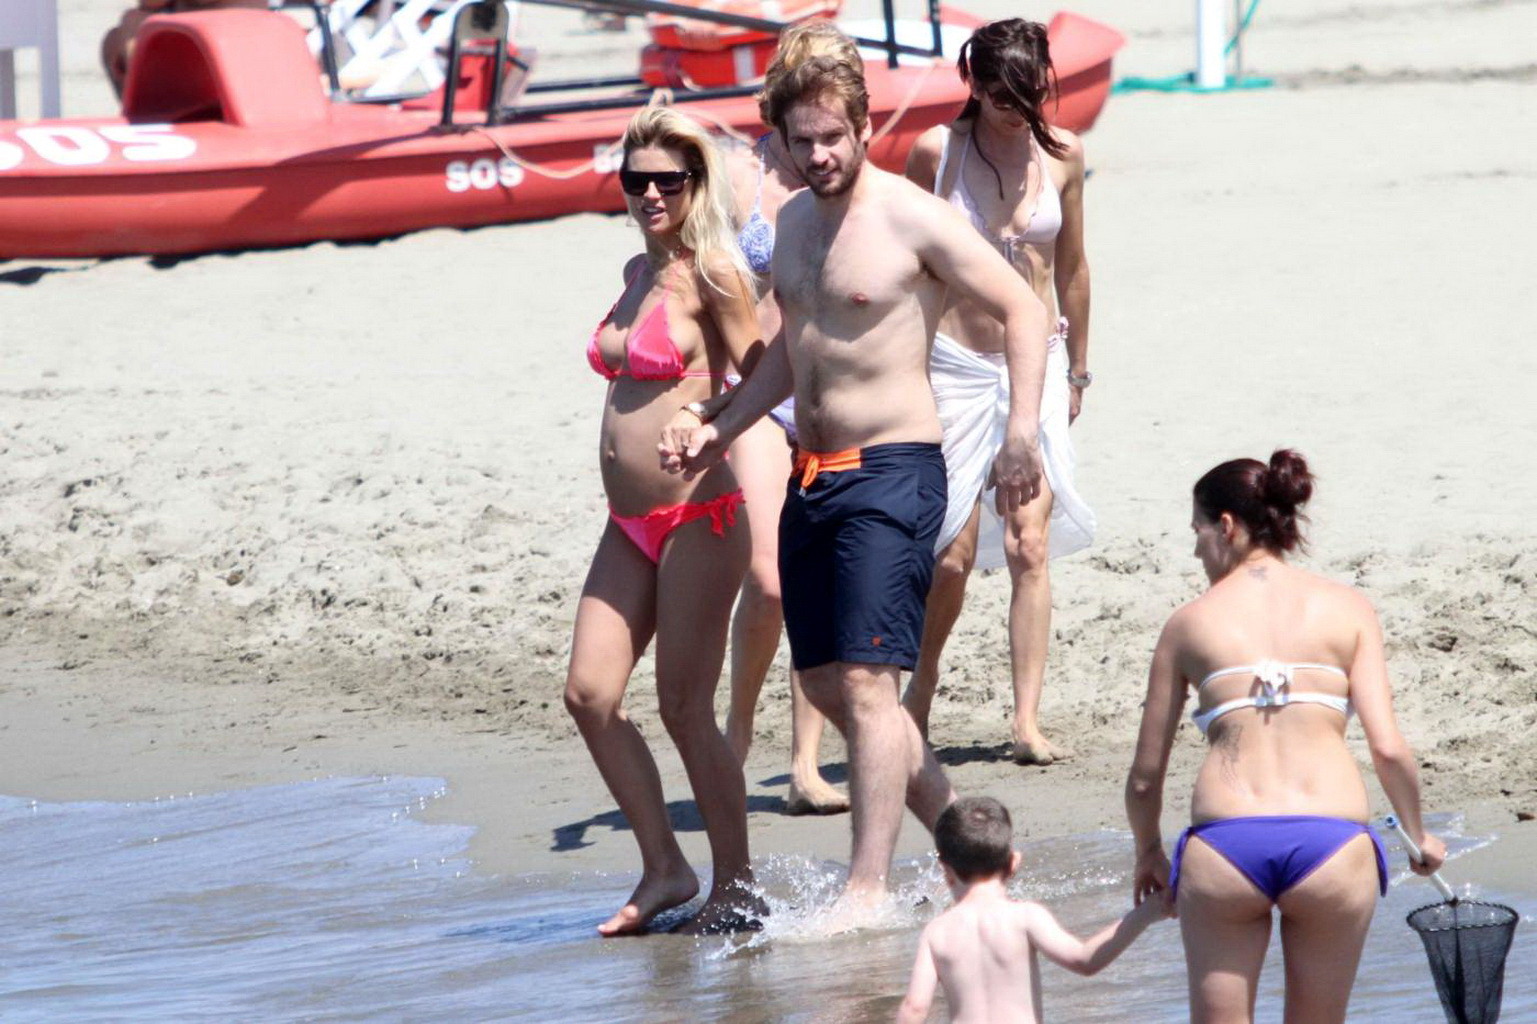 Michelle Hunziker pregnant wearing a bikini on the beach in Forte dei Marmi, Ita